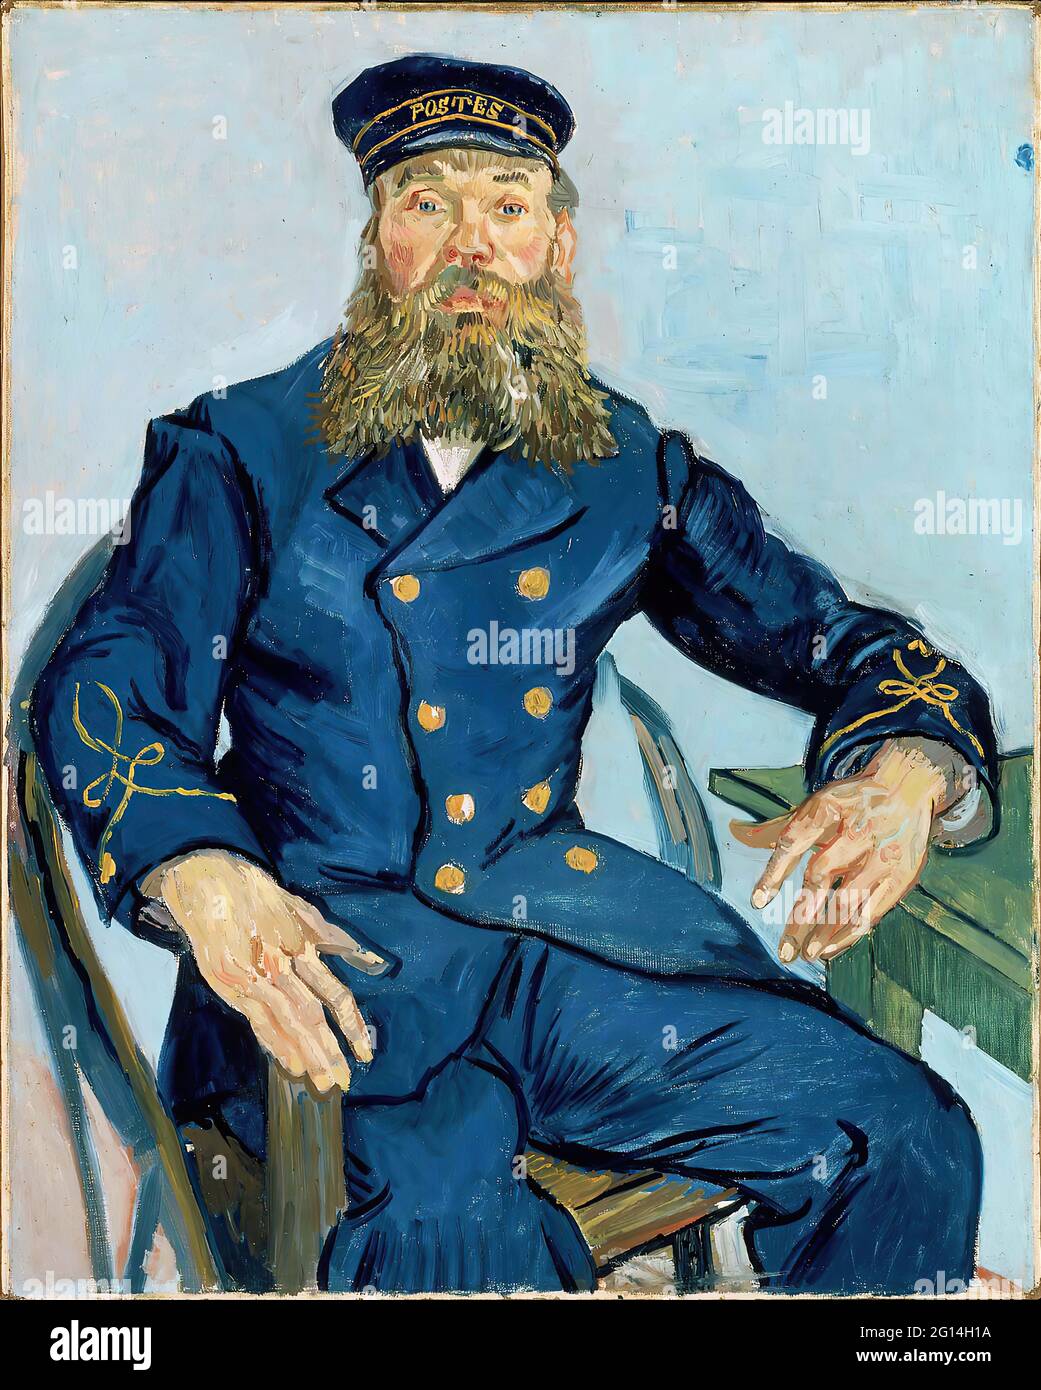 Vincent Van Gogh - Postman Joseph Roulin Foto de stock